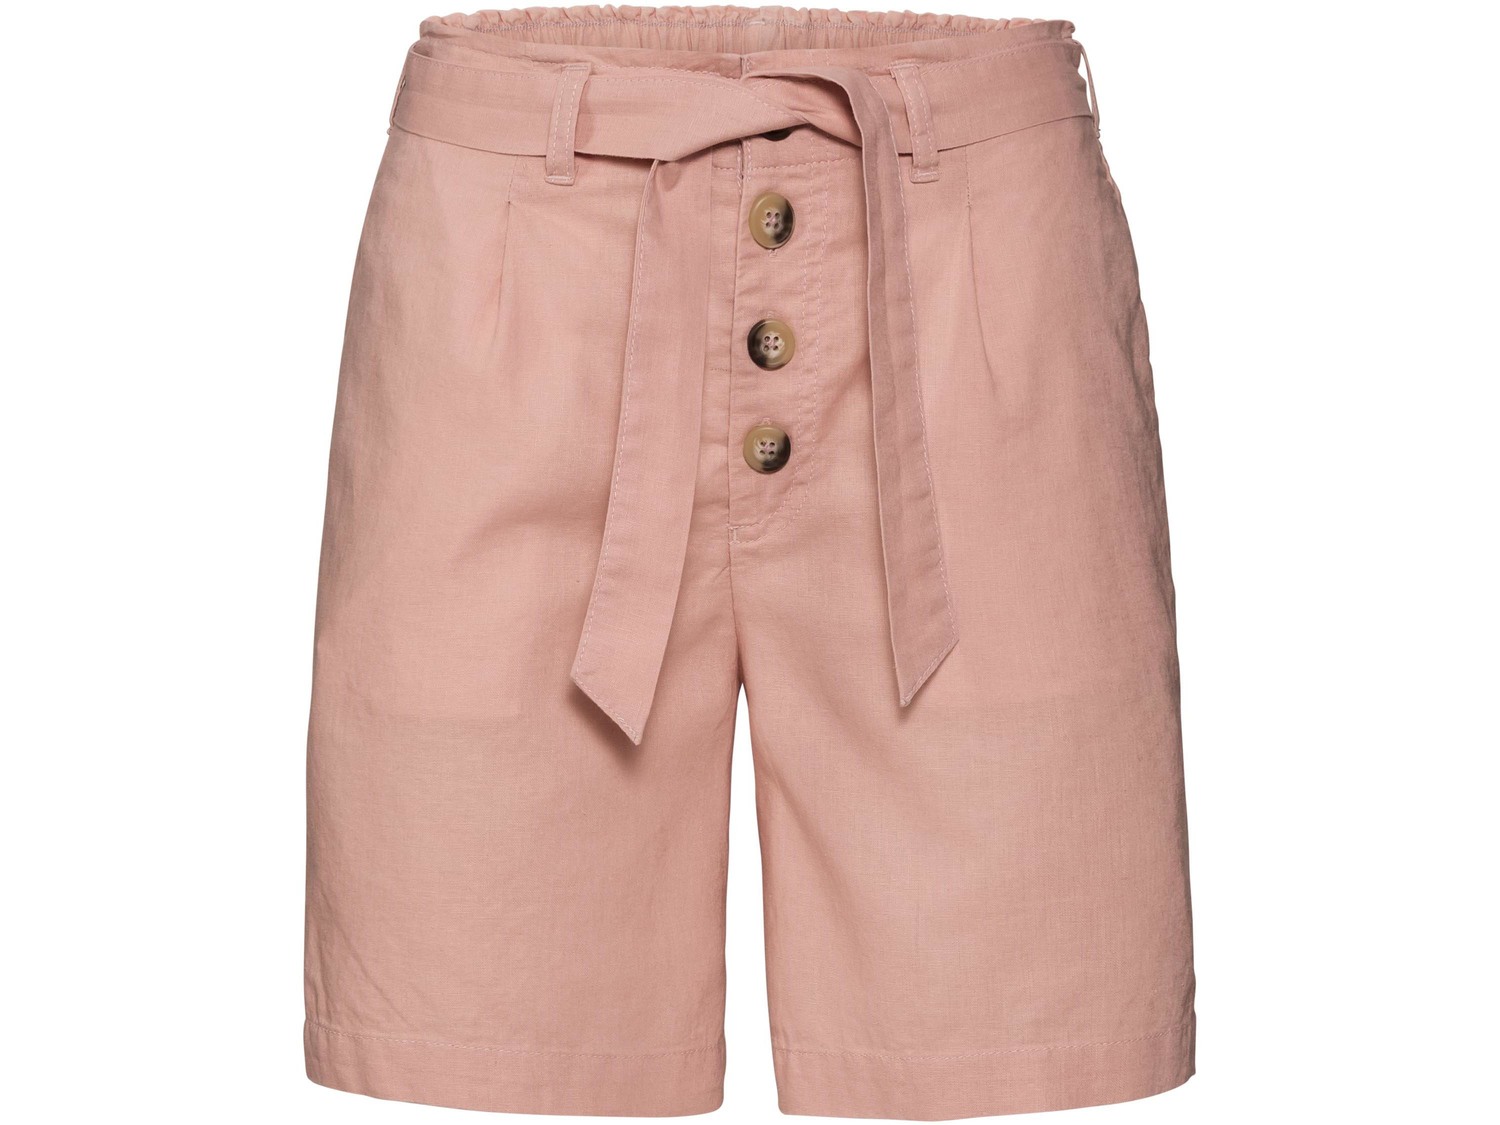 Shorts in lino da donna Esmara, prezzo 7.99 &#8364;  
Misure: 38-46
- Oeko tex NEW